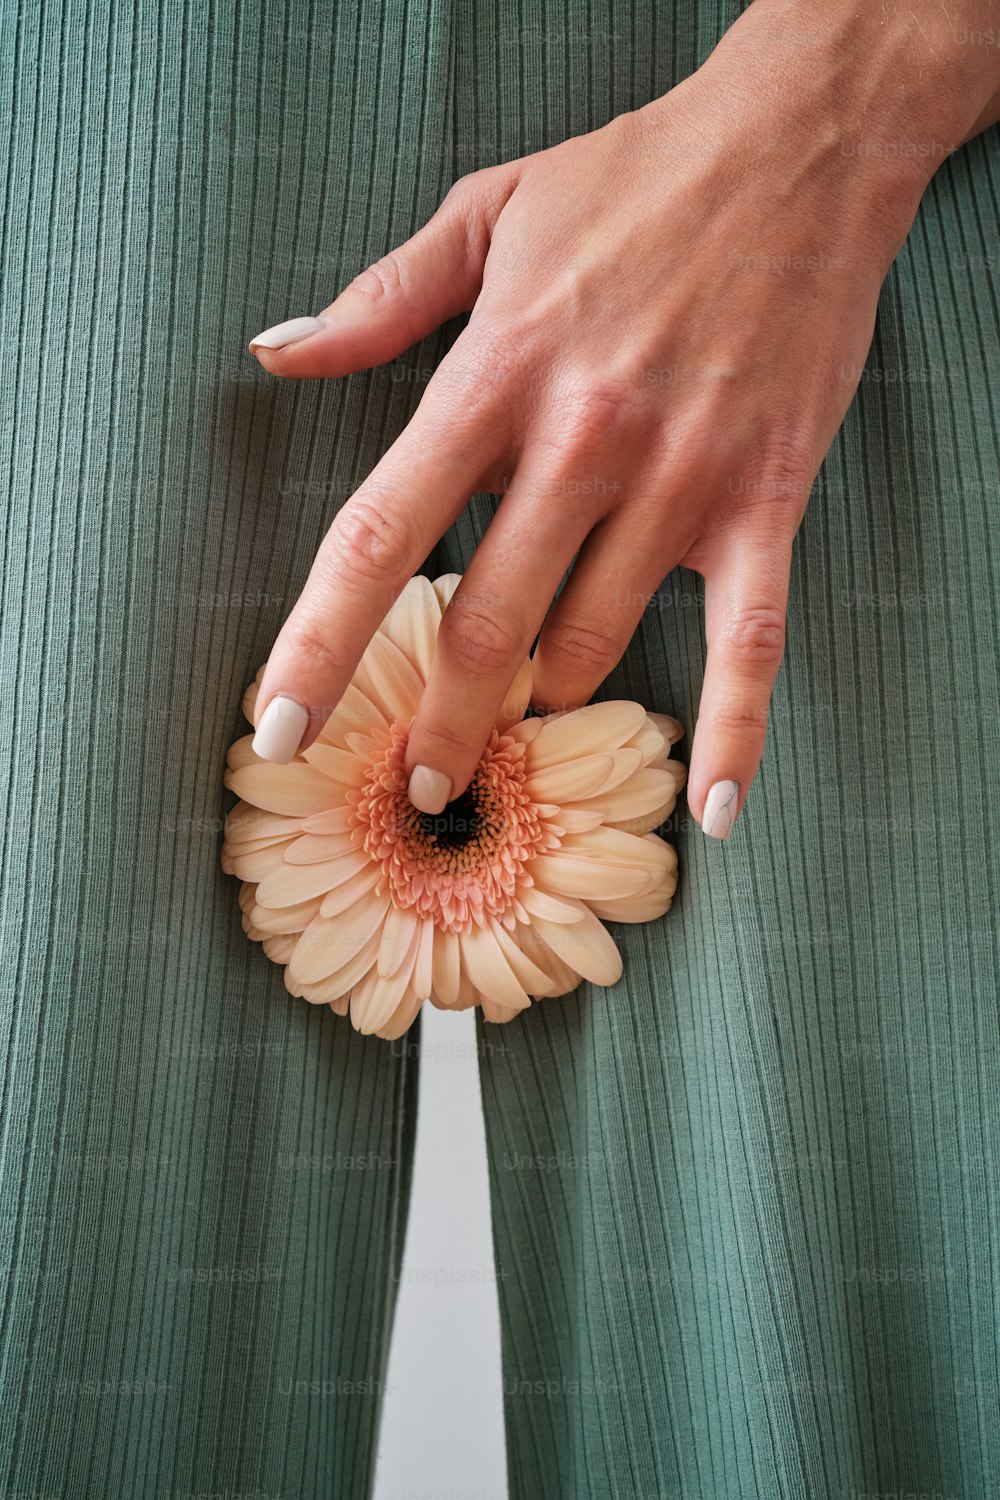 la mano de una mujer sosteniendo una flor en sus pantalones